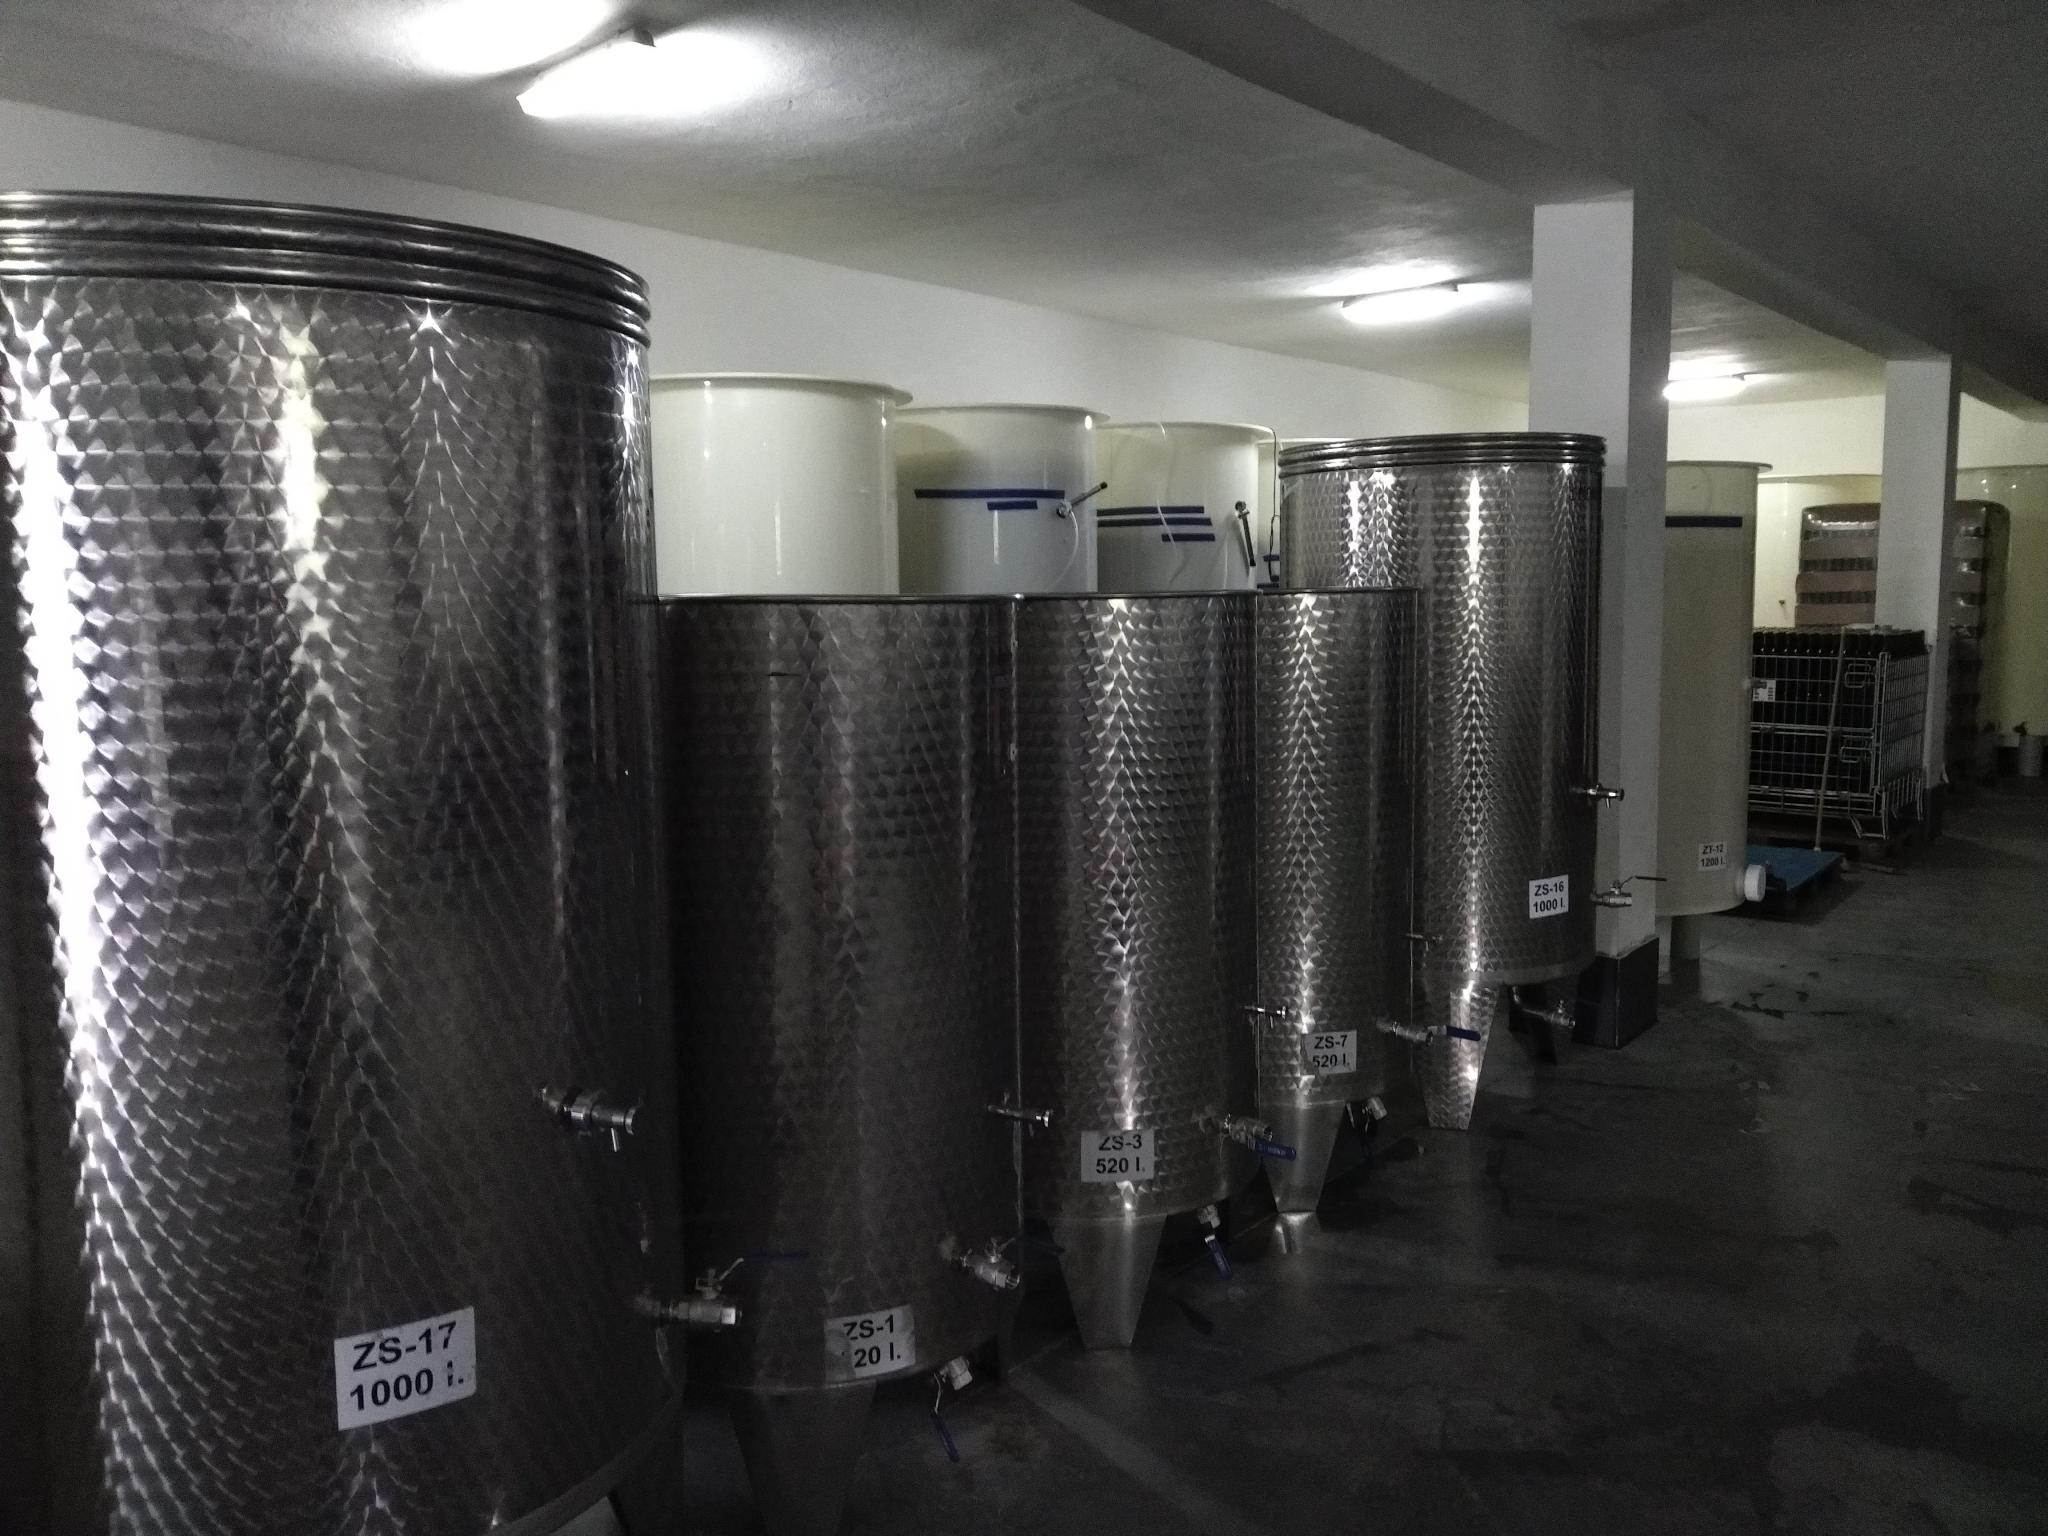 Pomieszczenie w cydrowni z tankami fermetnacyjnymi.